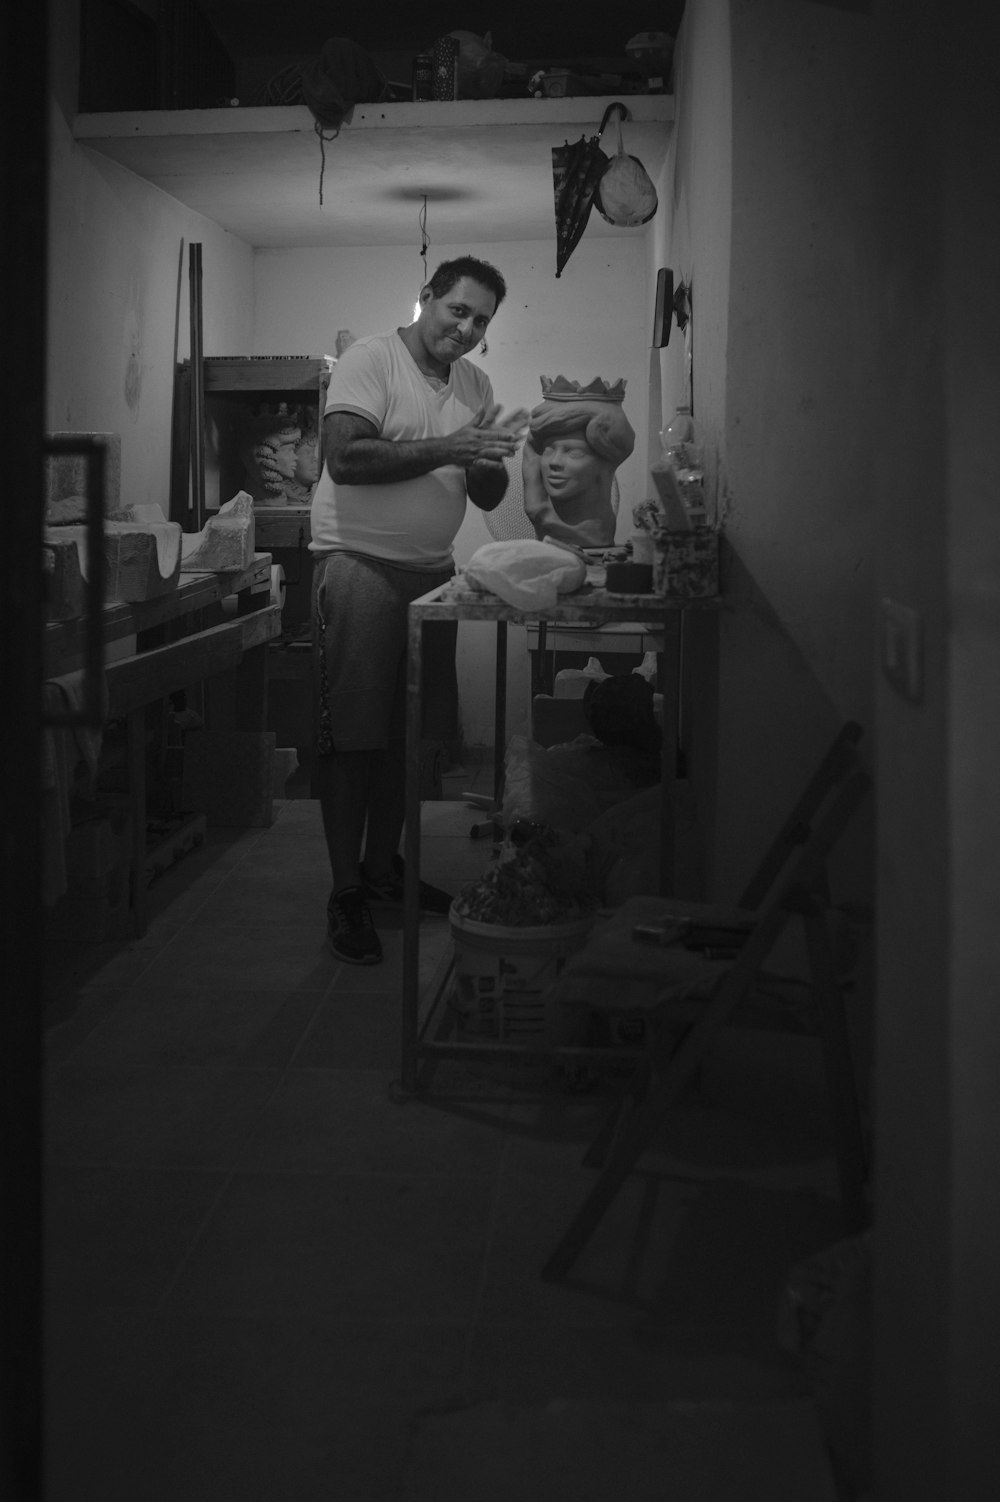 Una foto en blanco y negro de un hombre en una cocina